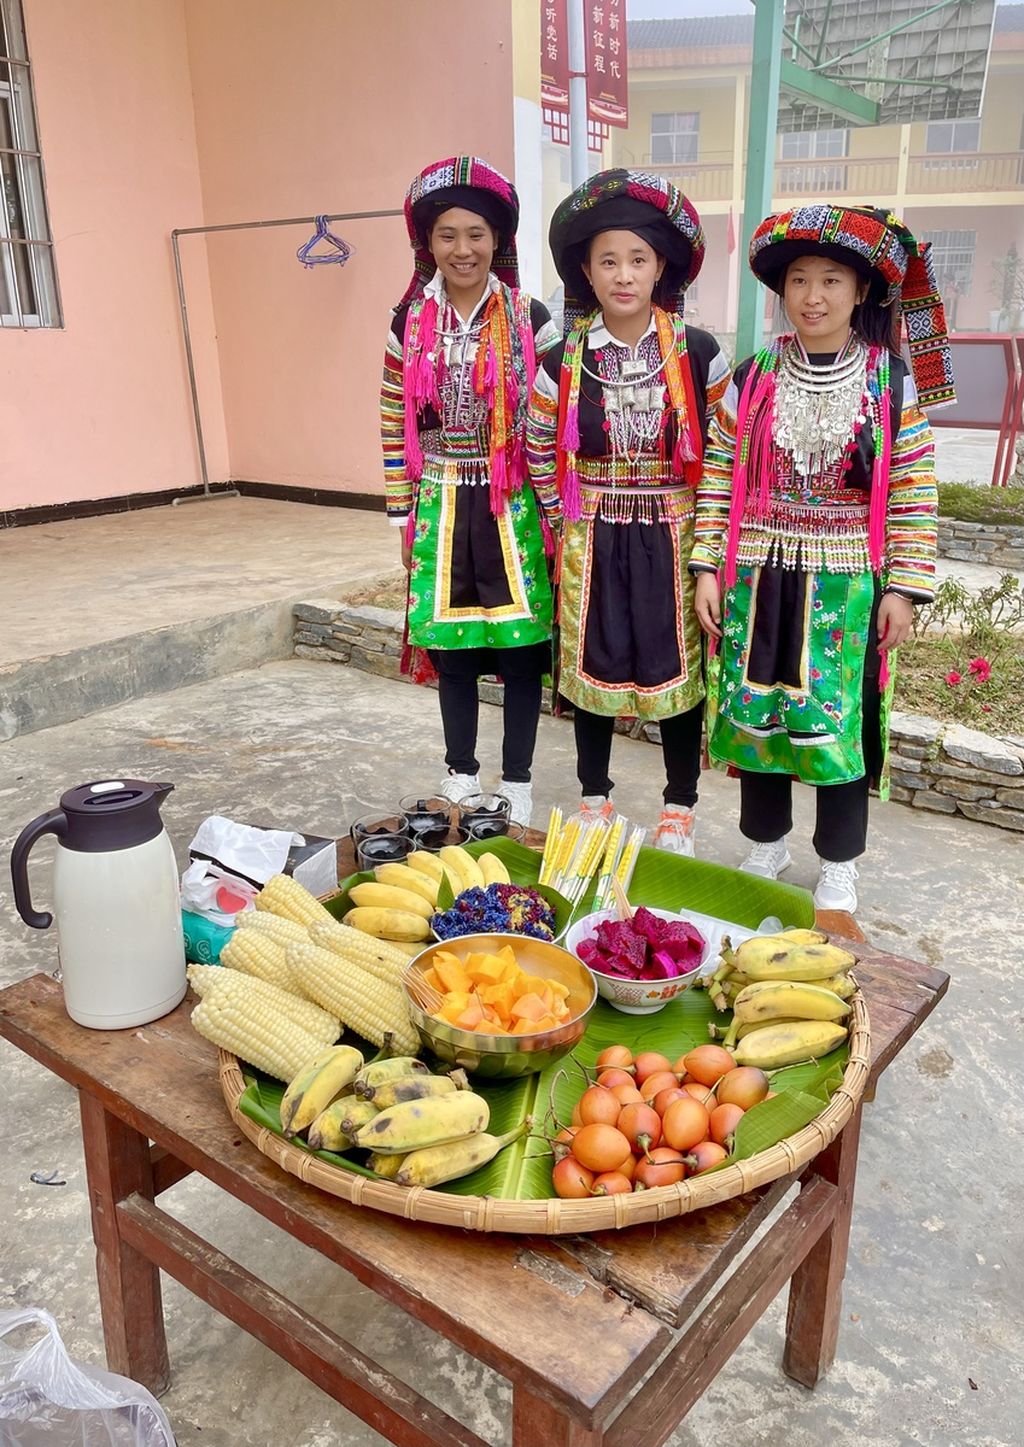 Salah satu kelompok etnis minoritas di Wenshan, Yao, tinggal di dataran tinggi di Wenshan dan bertani tomat. Hasil panennya lalu dijual ke pasar dan secara online. Ketika kami berkunjung ke desa mereka, Kamis, mereka menyajikan buah-buahan seperti pepaya.